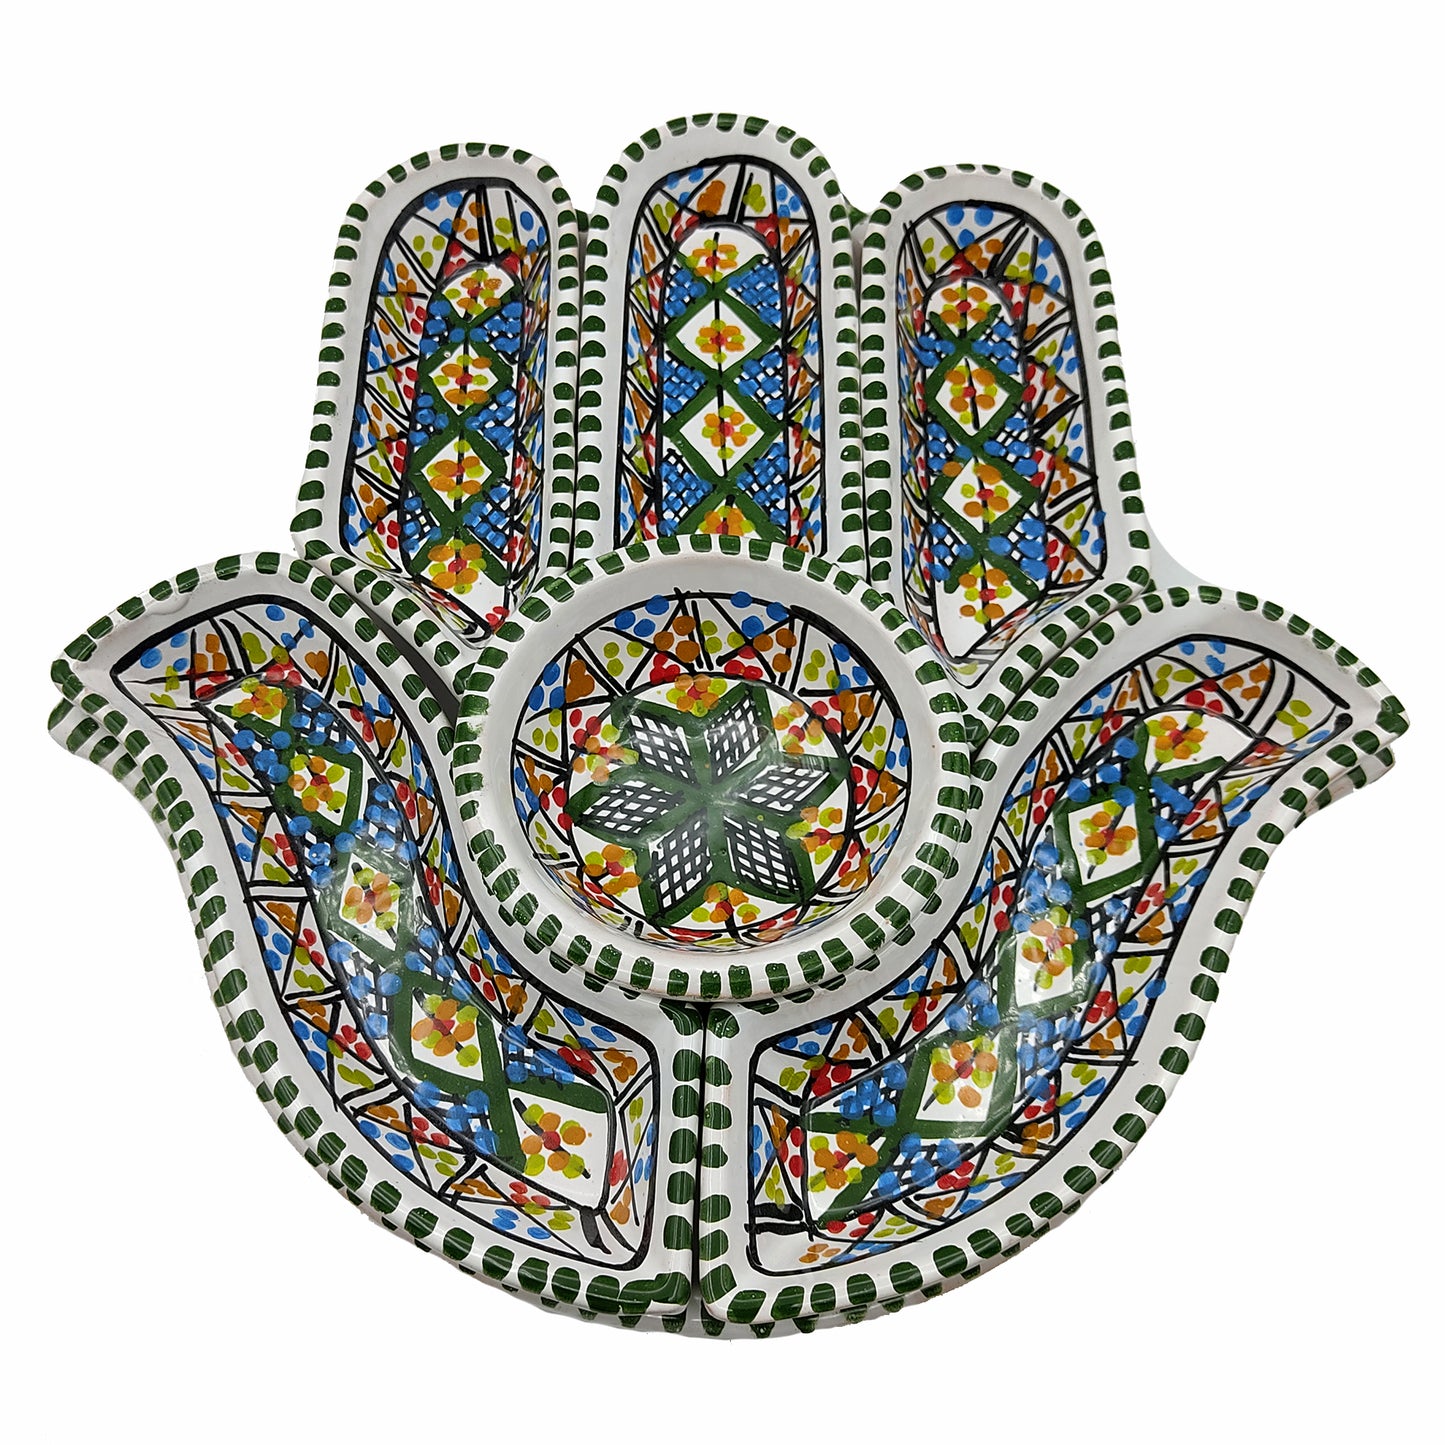 Antipastiera Piatto Etnico Ceramica Terracotta Tunisina Marocchina 2611201213